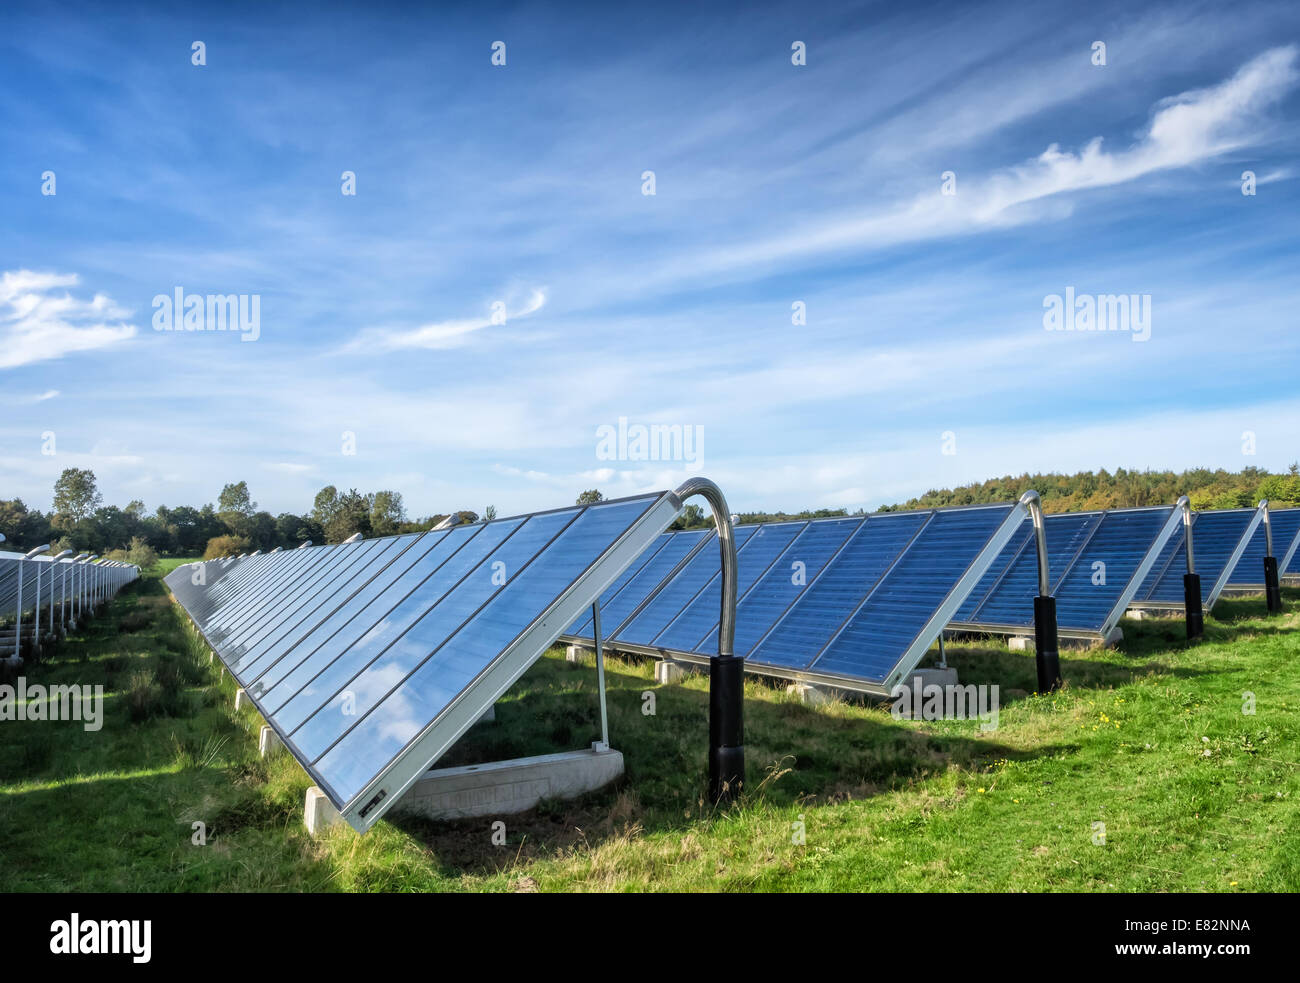 Heisses Wasser mit Sonnenenergie in großem Maßstab Stockfoto